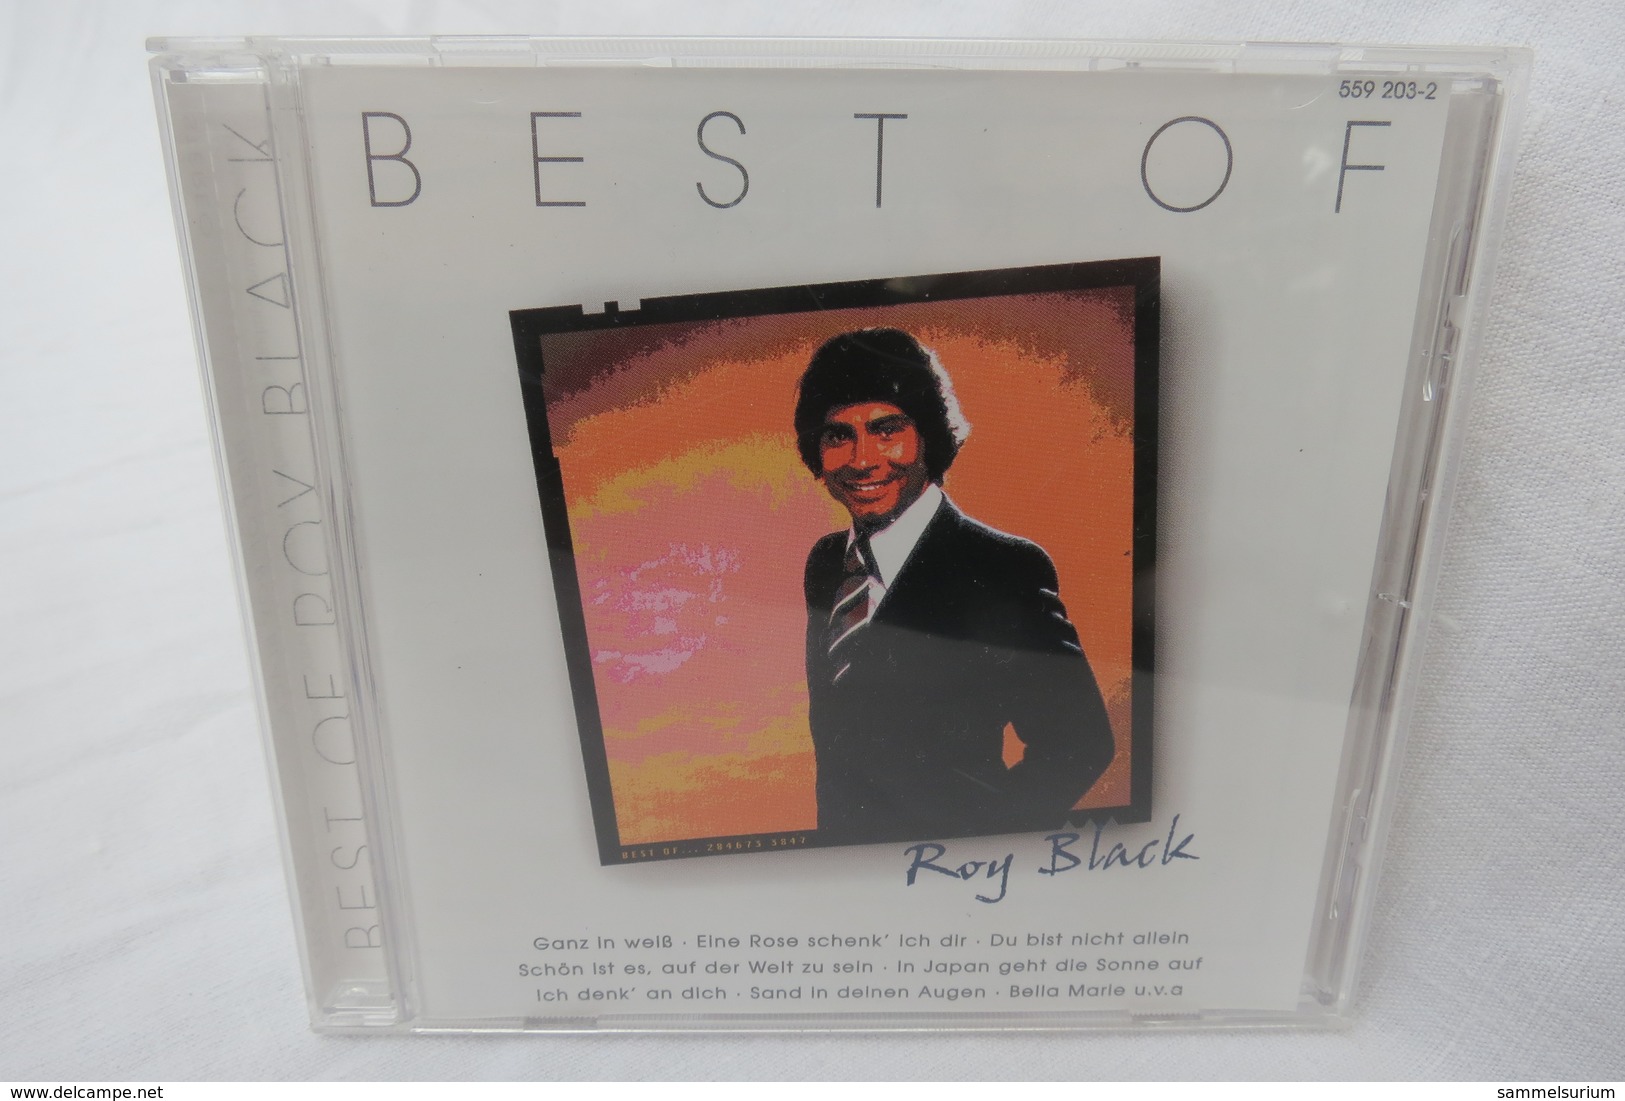 CD "Roy Black" Best Of - Autres - Musique Allemande